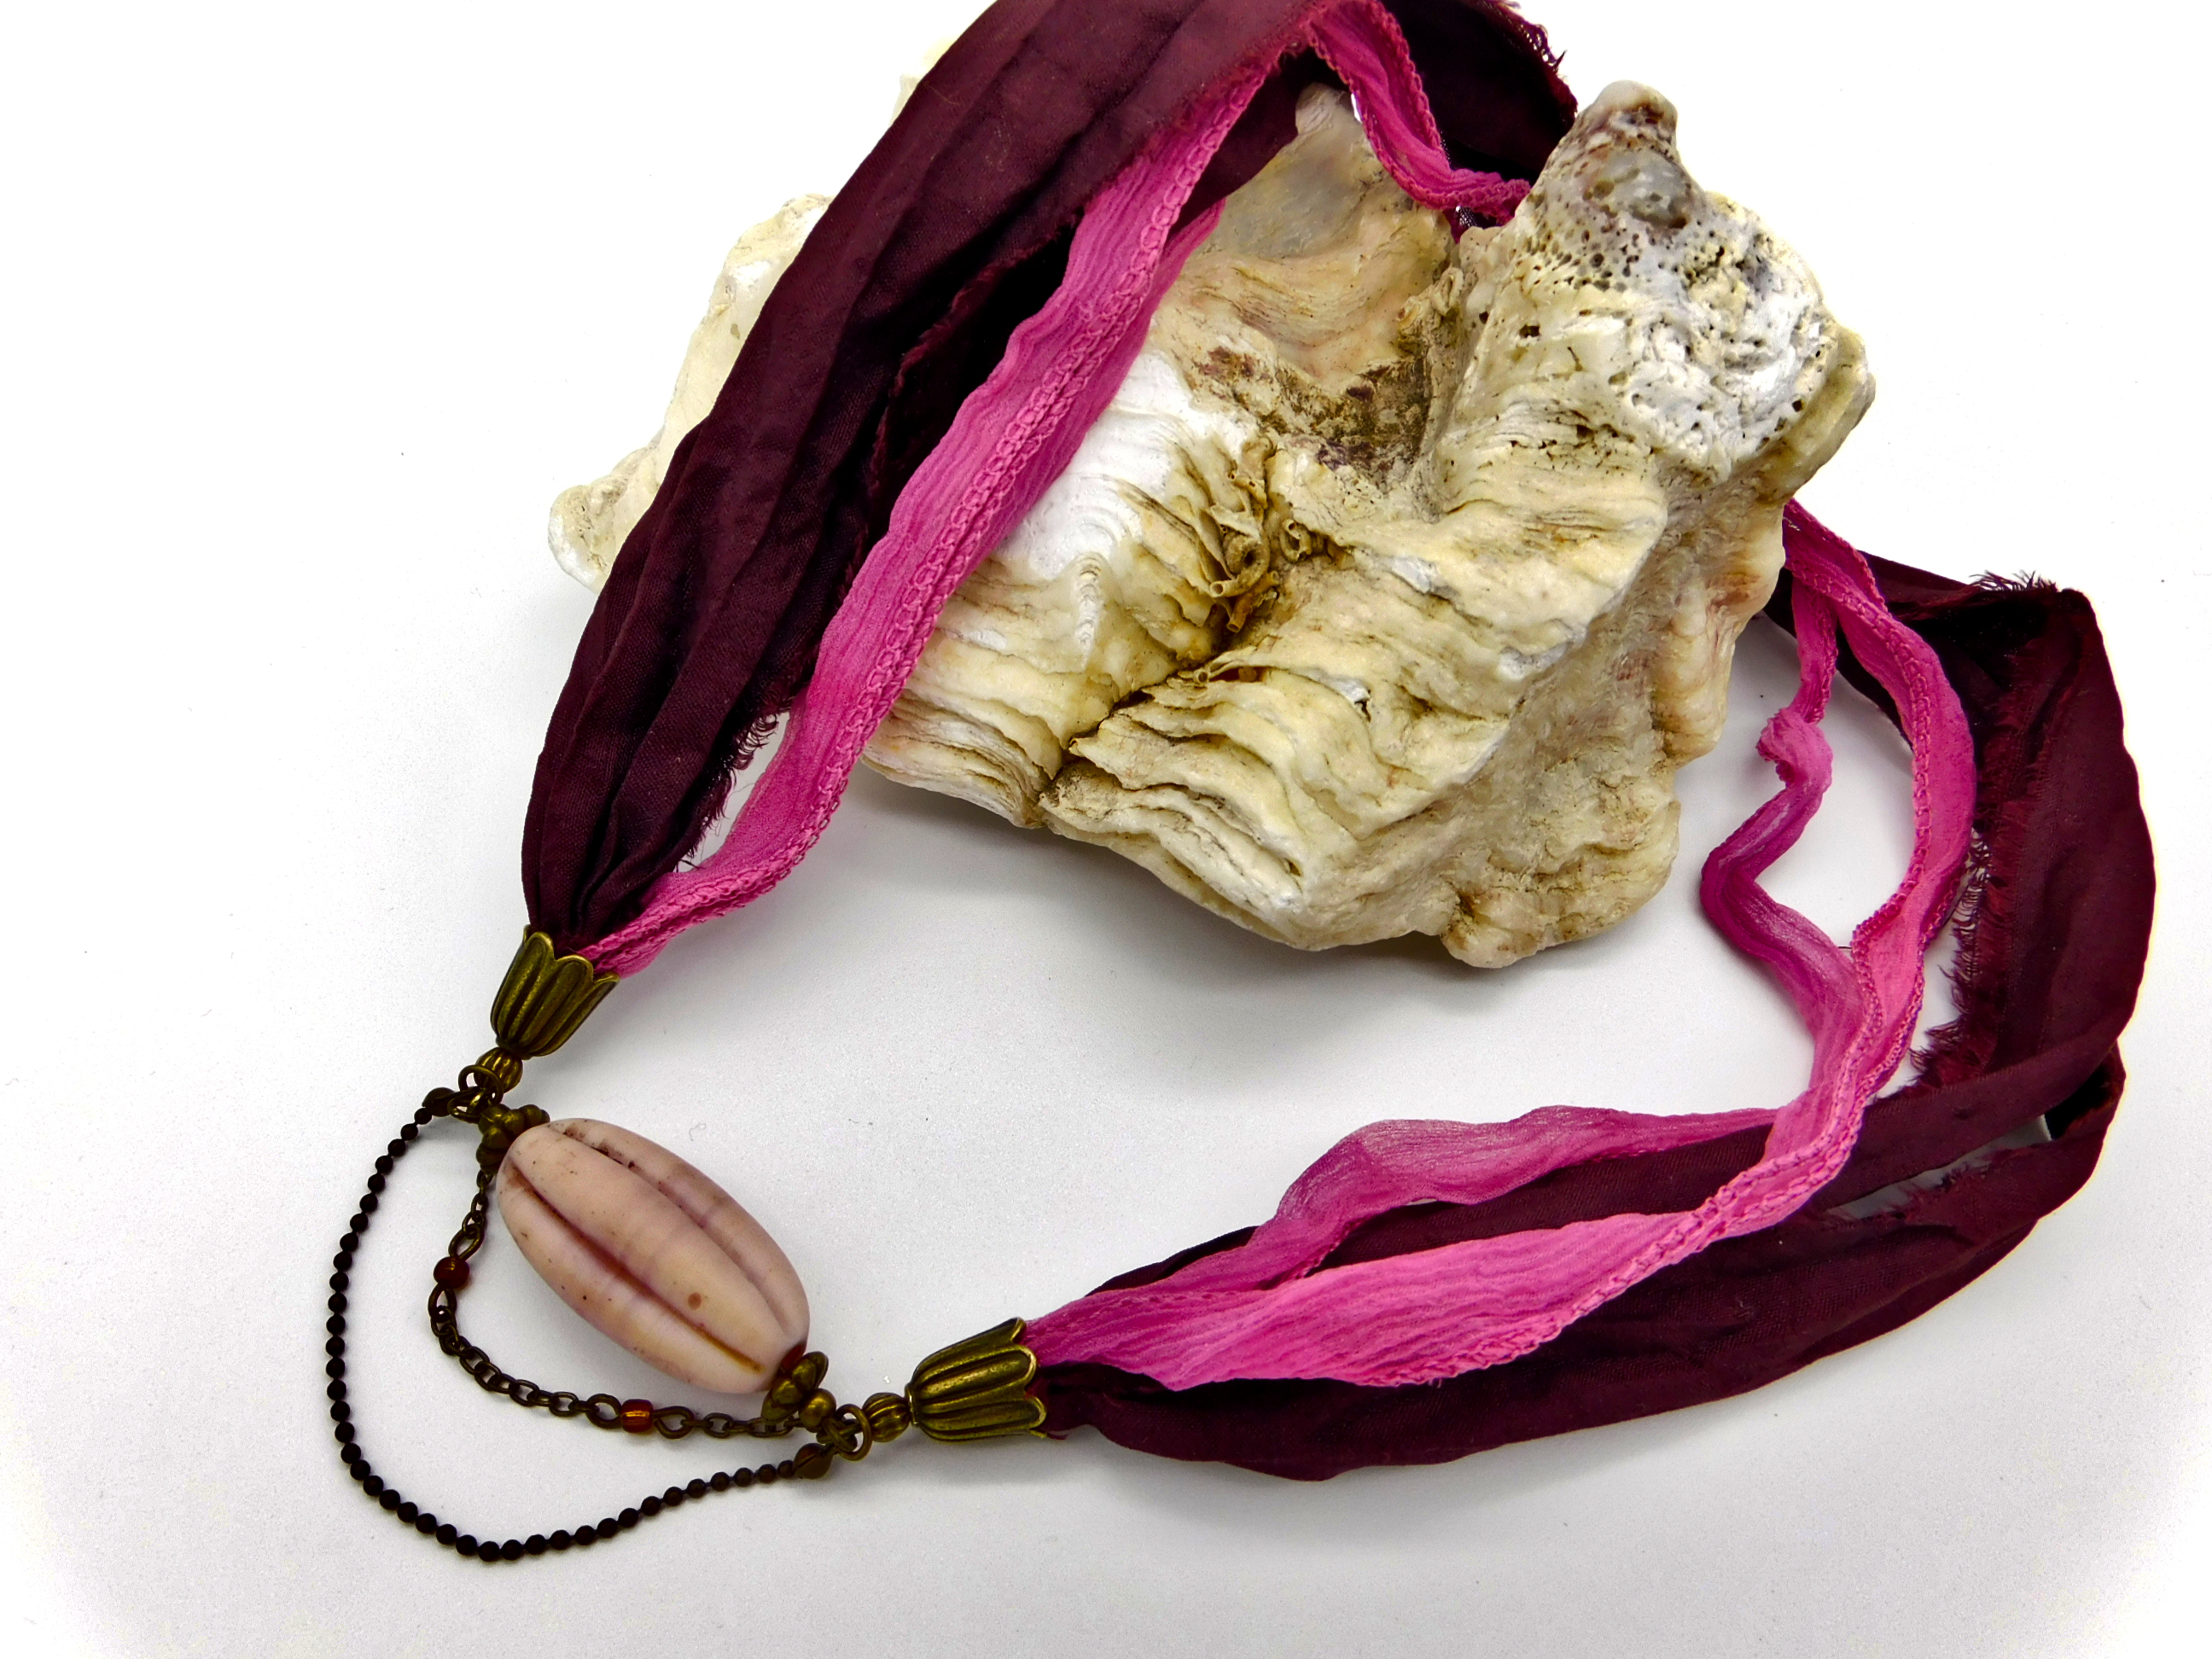 Halskette mit Sari Seidenband - dunkelrot, rosé